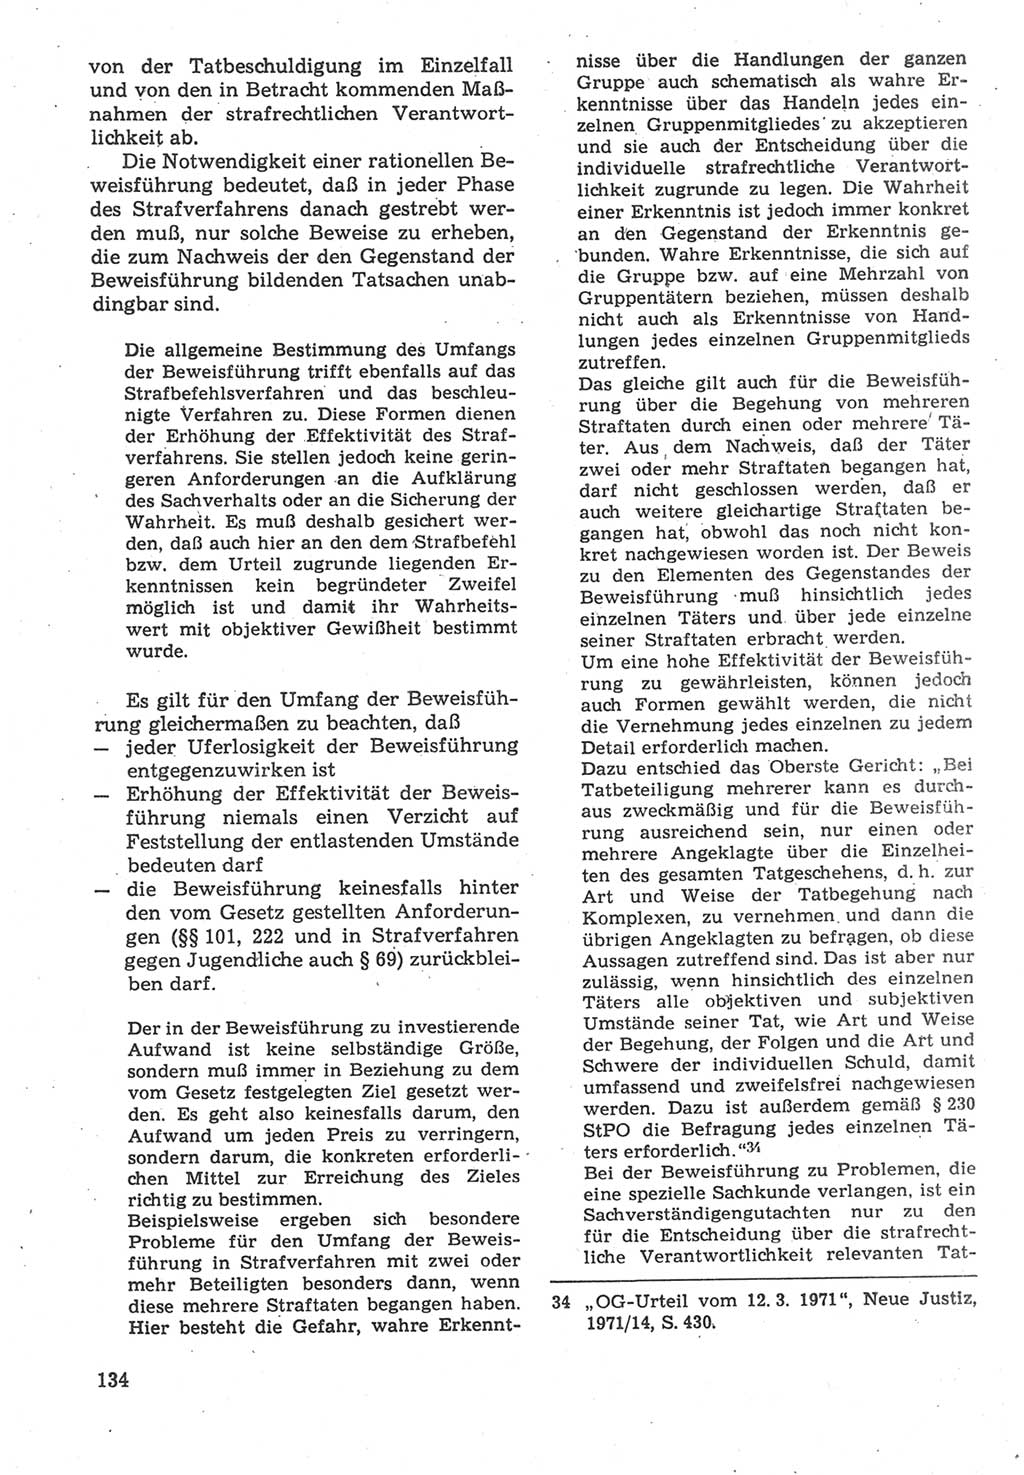 Strafverfahrensrecht [Deutsche Demokratische Republik (DDR)], Lehrbuch 1987, Seite 134 (Strafverf.-R. DDR Lb. 1987, S. 134)